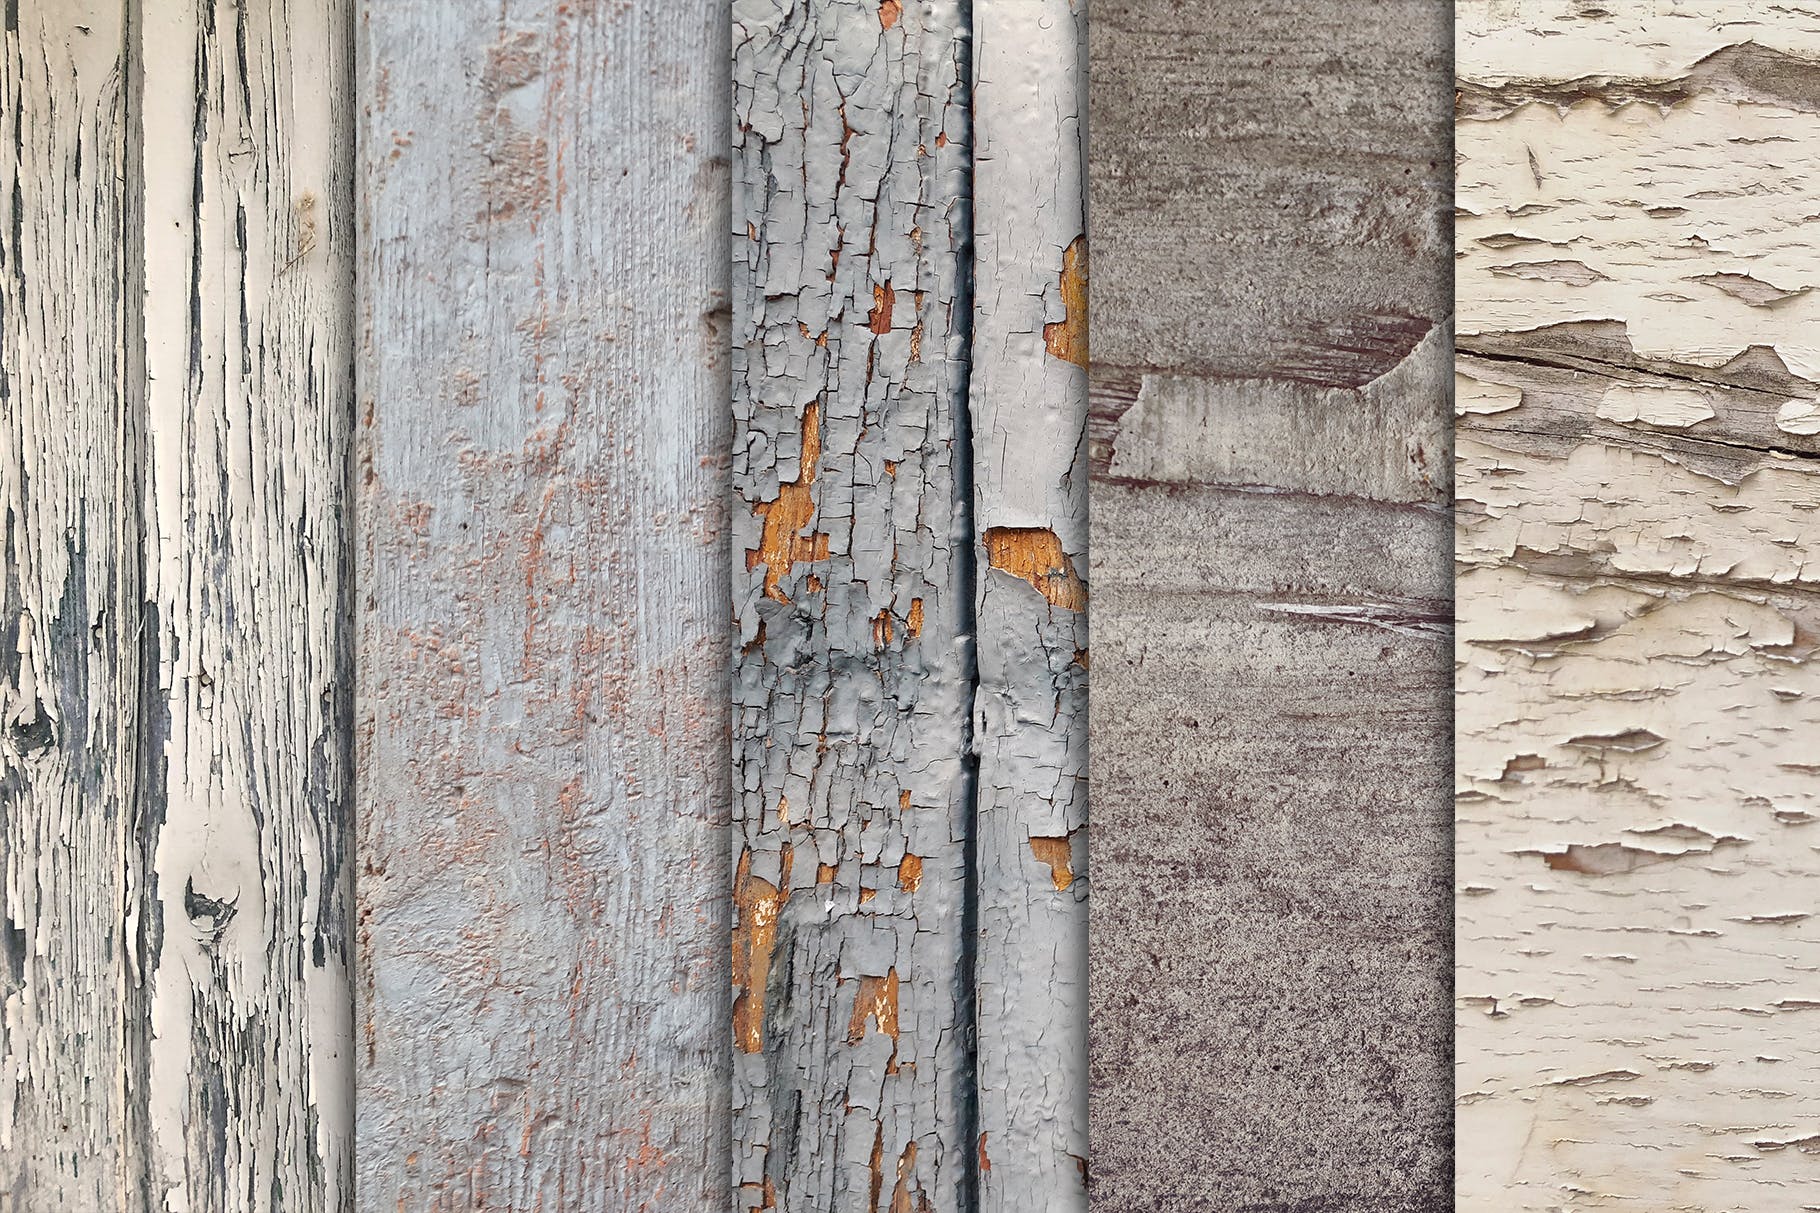 10张古老木地板高清照片图片背景素材v3 Grunge Wood Textures x10 Vol 3插图2